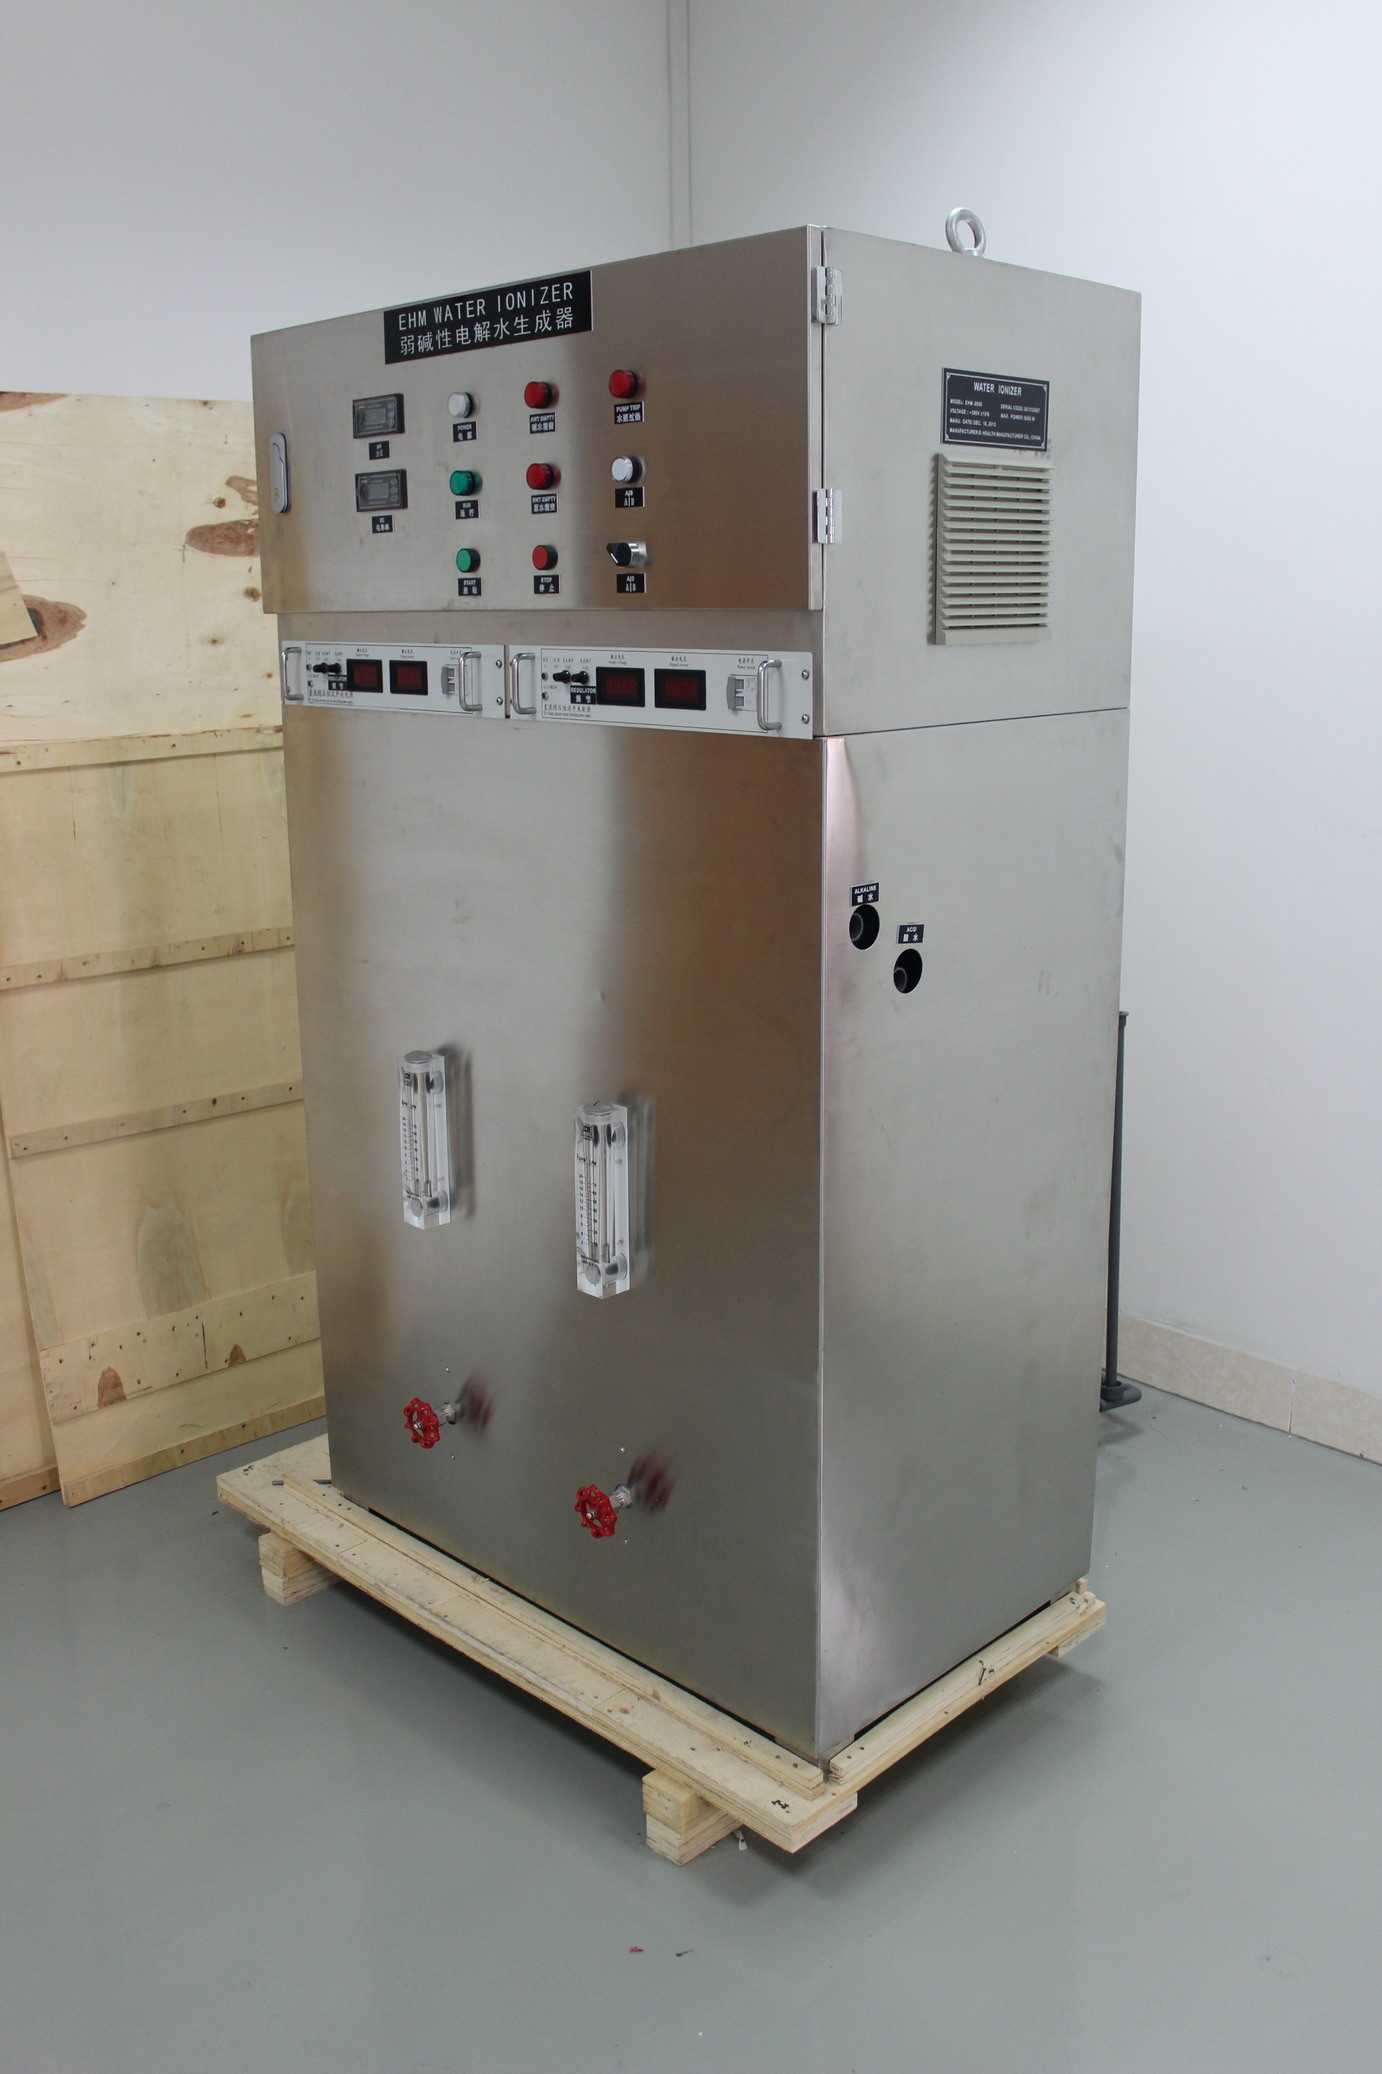 औद्योगिक जल उपचार प्रणाली मॉडल ईएचएम -1000 के साथ बड़ी क्षमता वाले जल आयनकारक